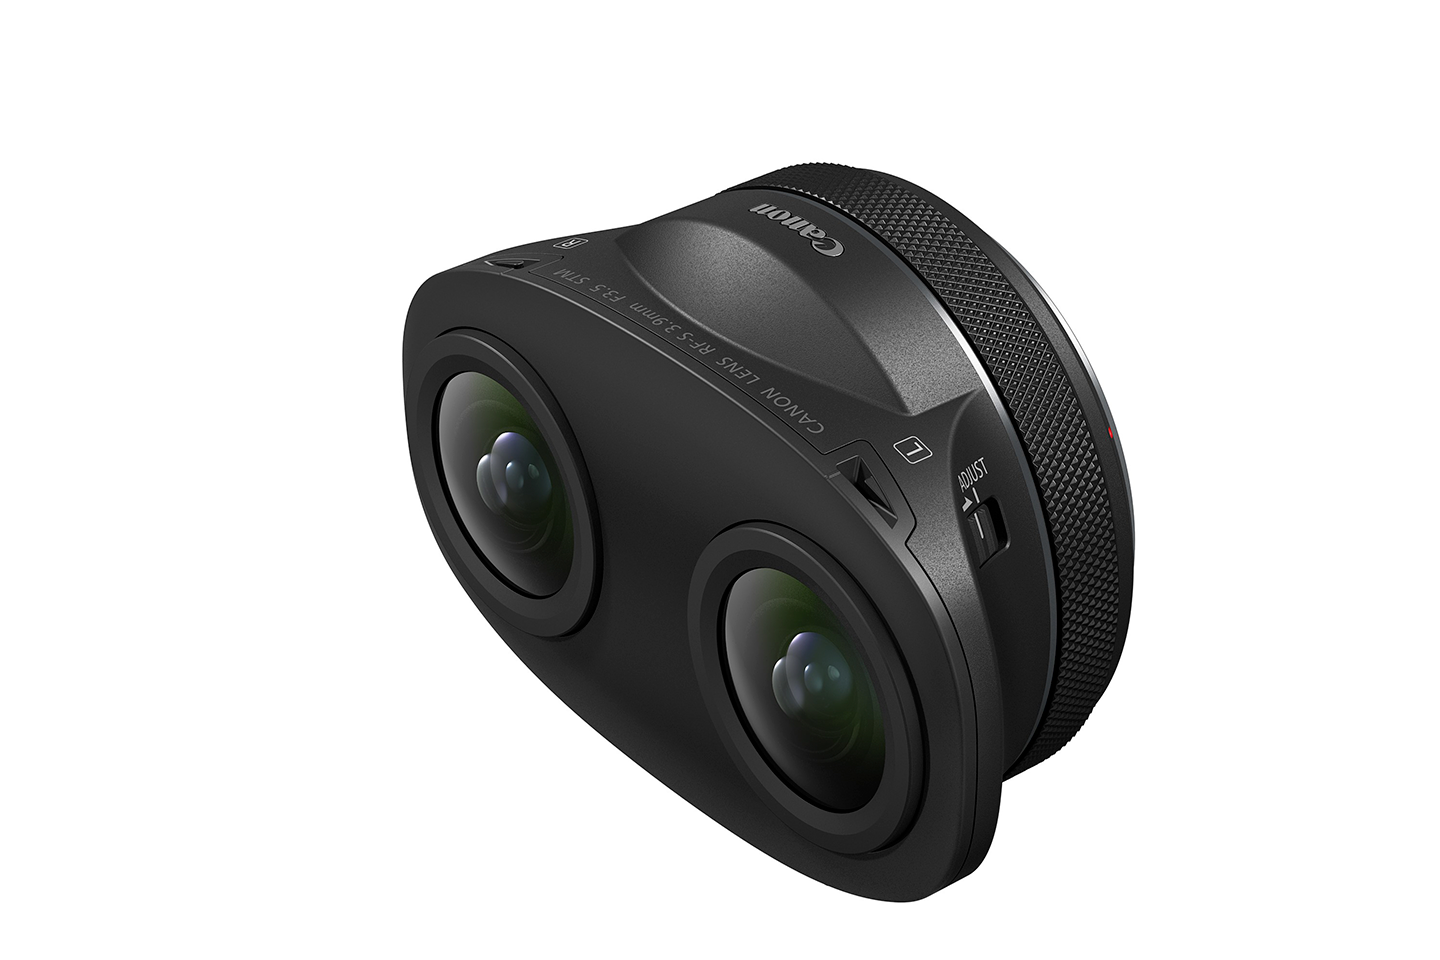 APS-Cサイズカメラ用3D VRレンズ“RF-S3.9mm F3.5 STM DUAL FISHEYE”を発売｜キヤノンMJグループ